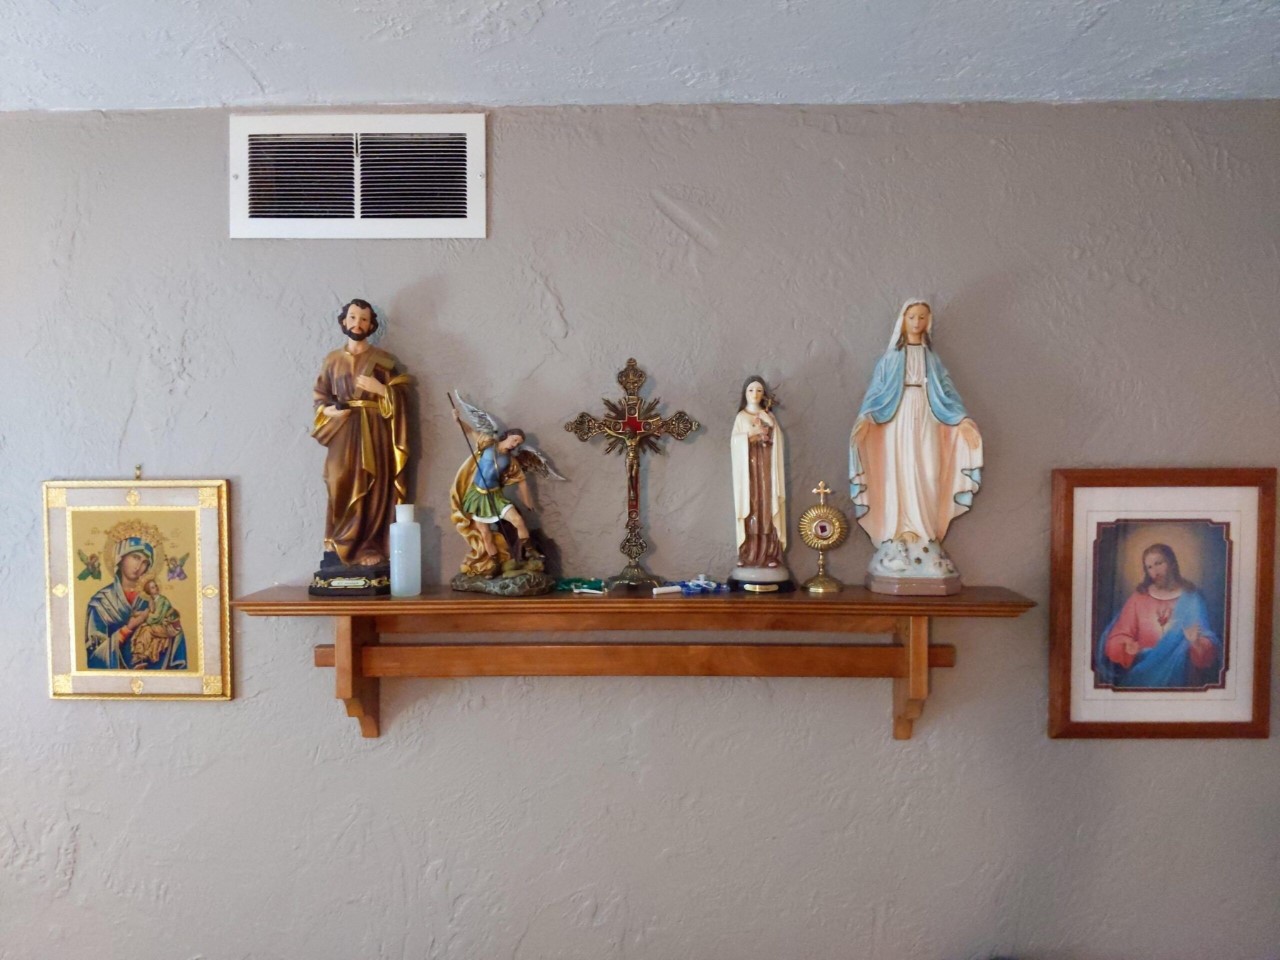 Mẫu bàn thờ công giáo treo tường hình chữ thập